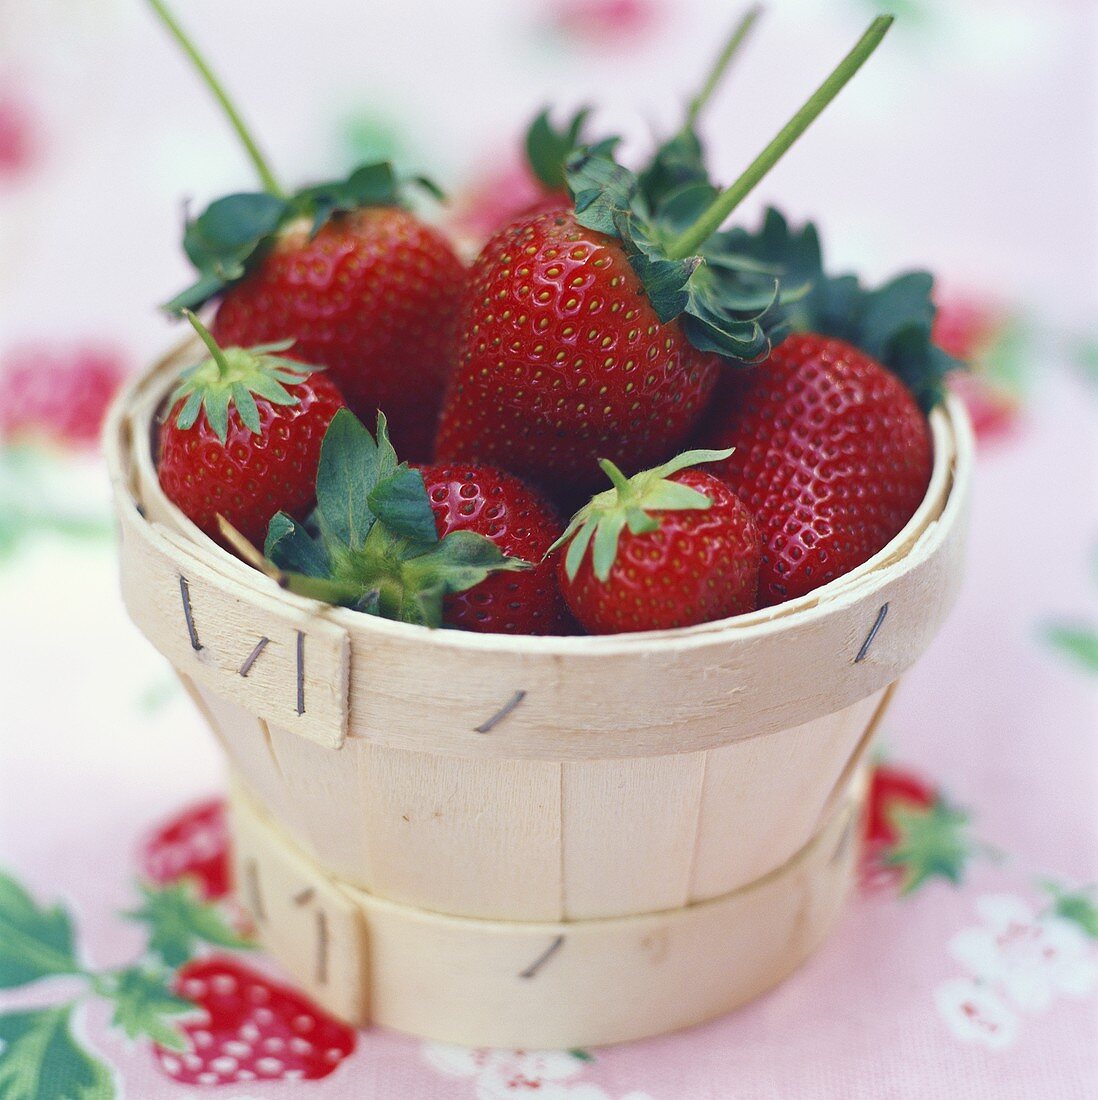 Körbchen mit frischen Erdbeeren